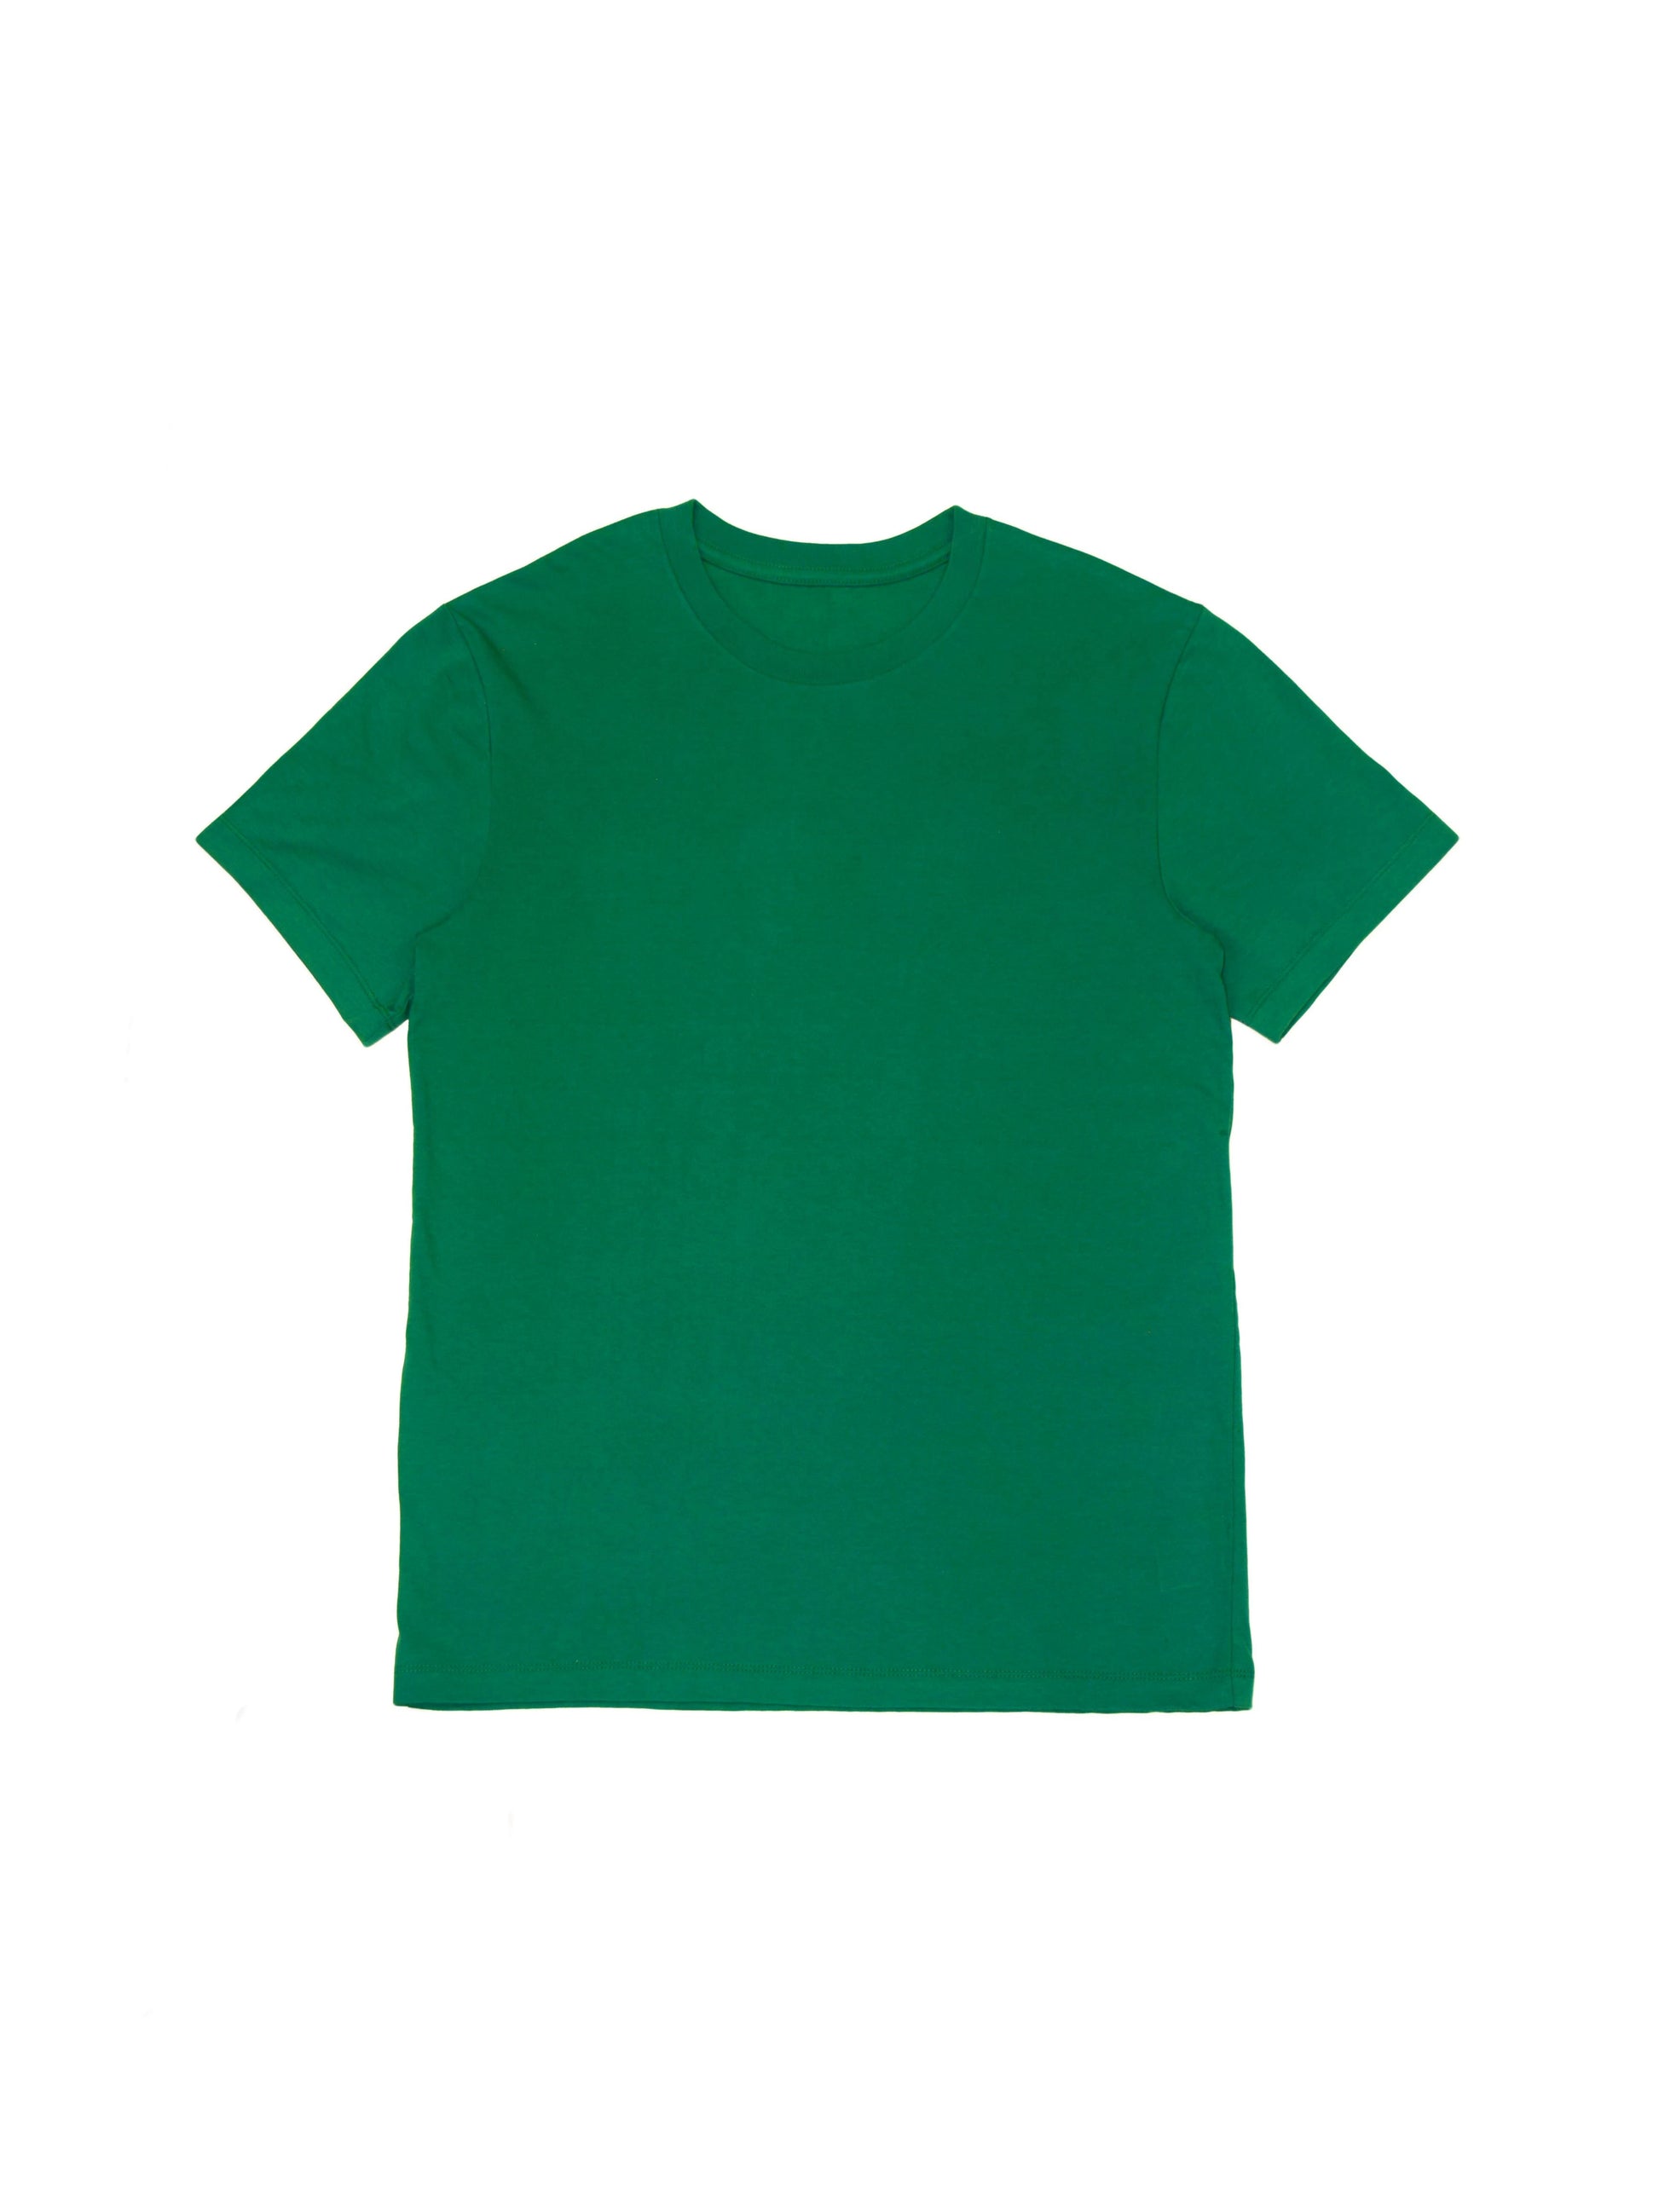 Boxy T-shirt - Emerald Green Cotton